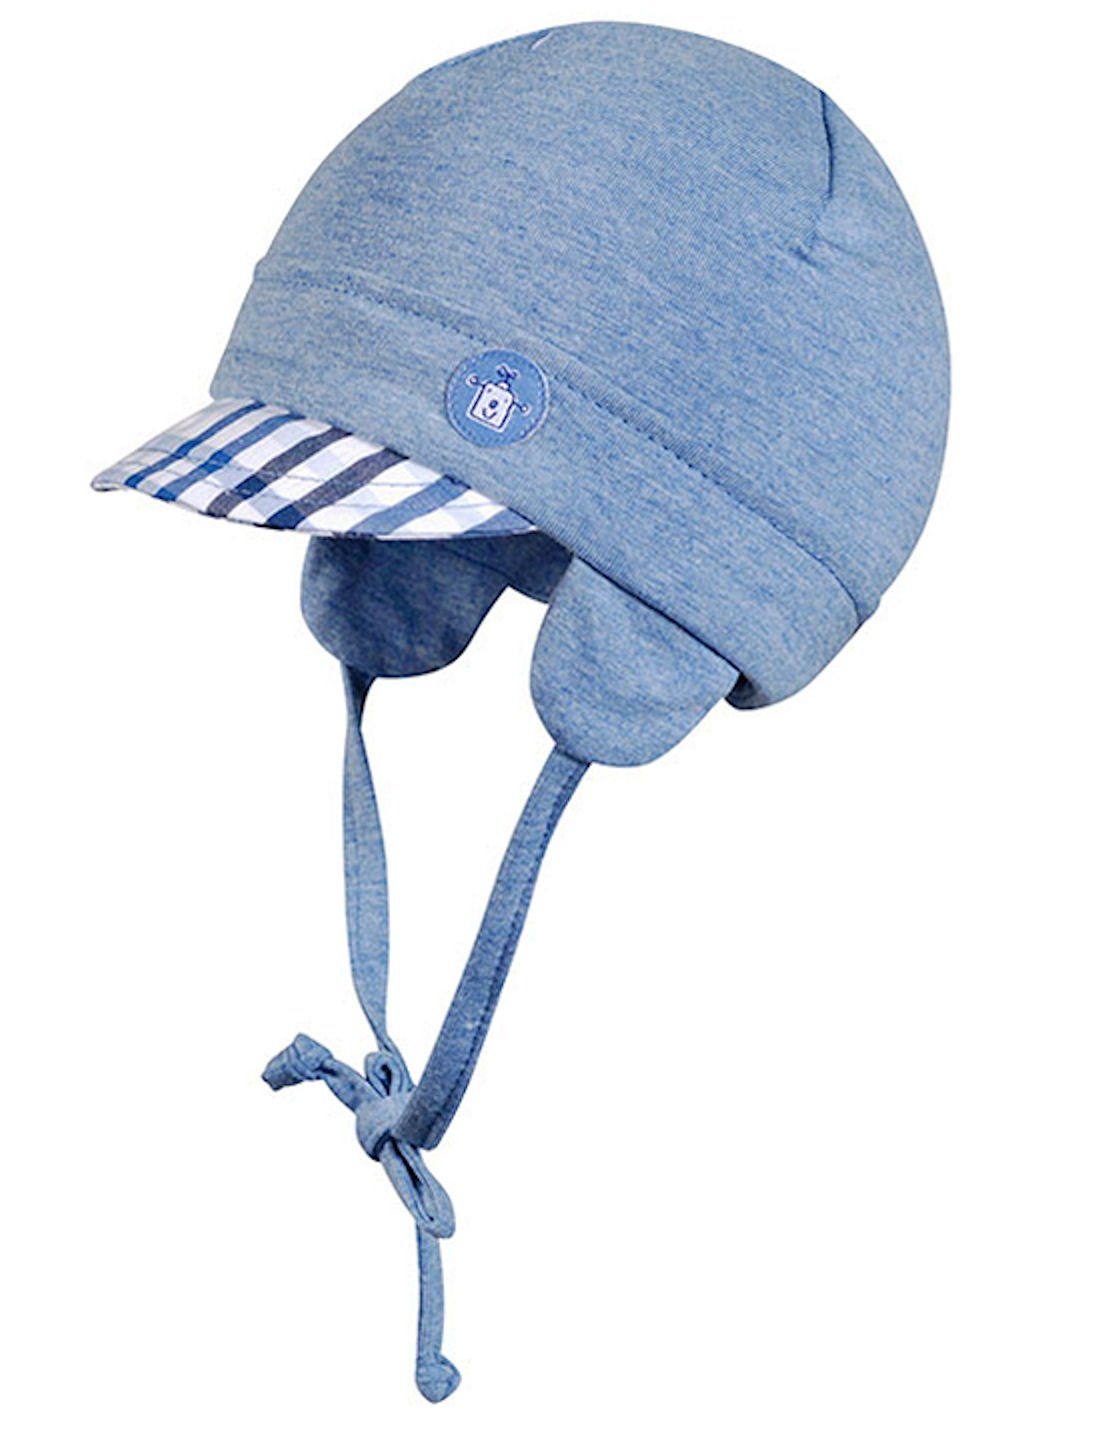 Fiebig Ohrenmütze Fiebig Bindemütze Jungen Mütze mit Schirm jeansblau (Mütze) | Ohrenmützen